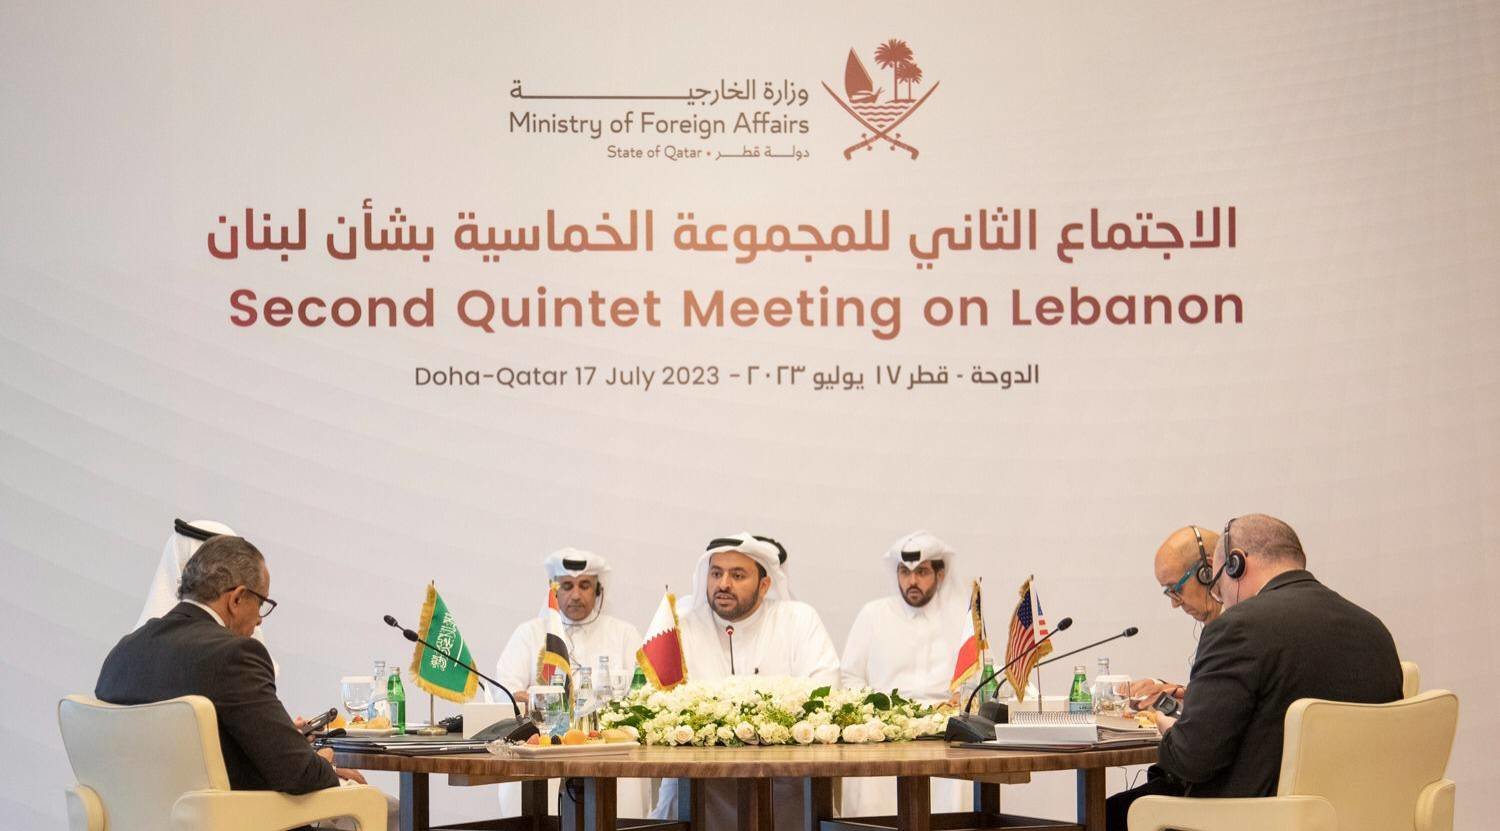 جانب من اجتماع المجموعة الخماسية حول لبنان الذي عُقد في الدوحة يوليو الماضي (وزارة الخارجية القطرية)